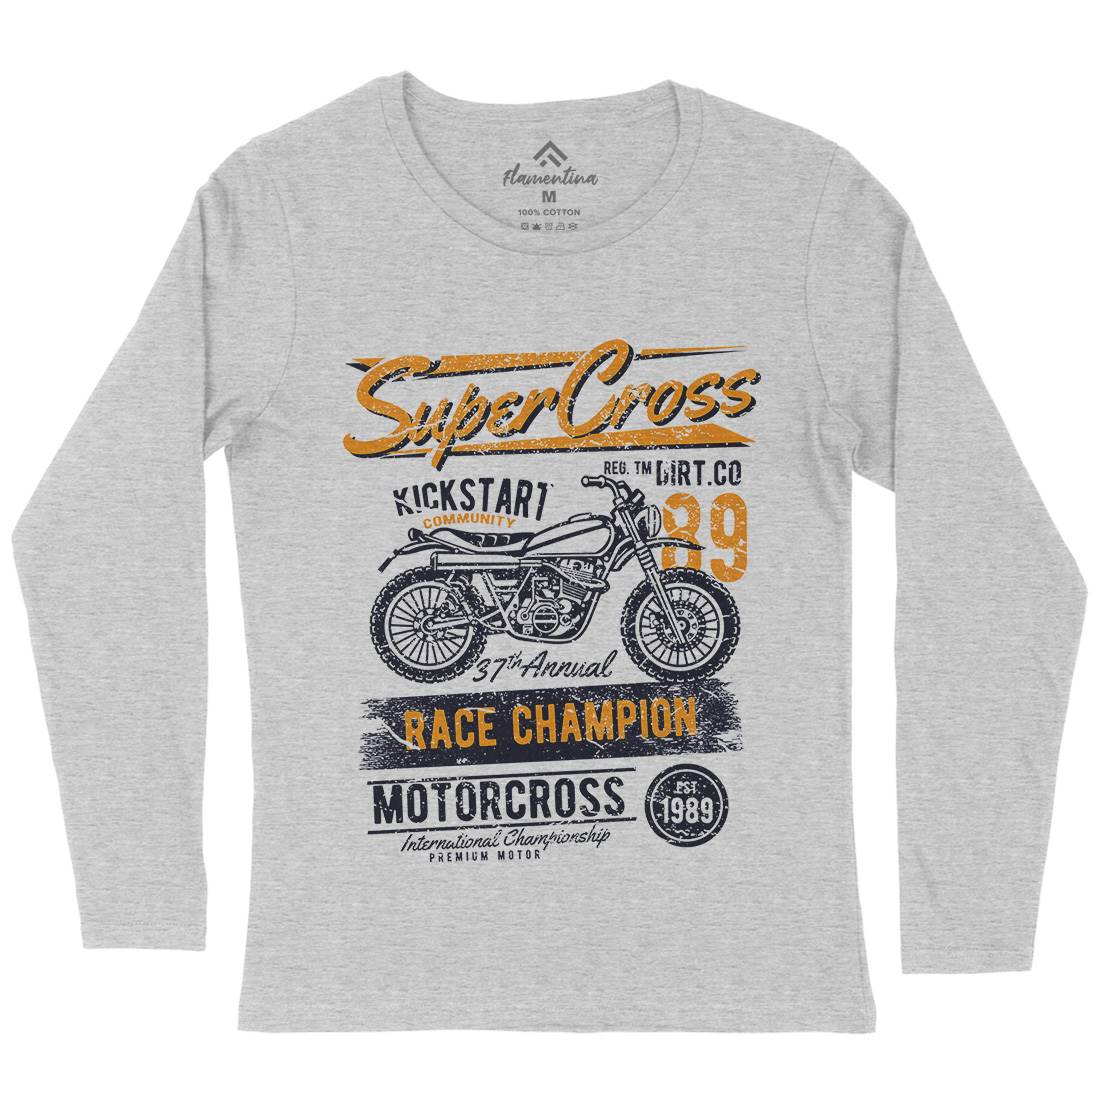 Super Cross Womens Long Sleeve T-Shirt Motorcycles A165